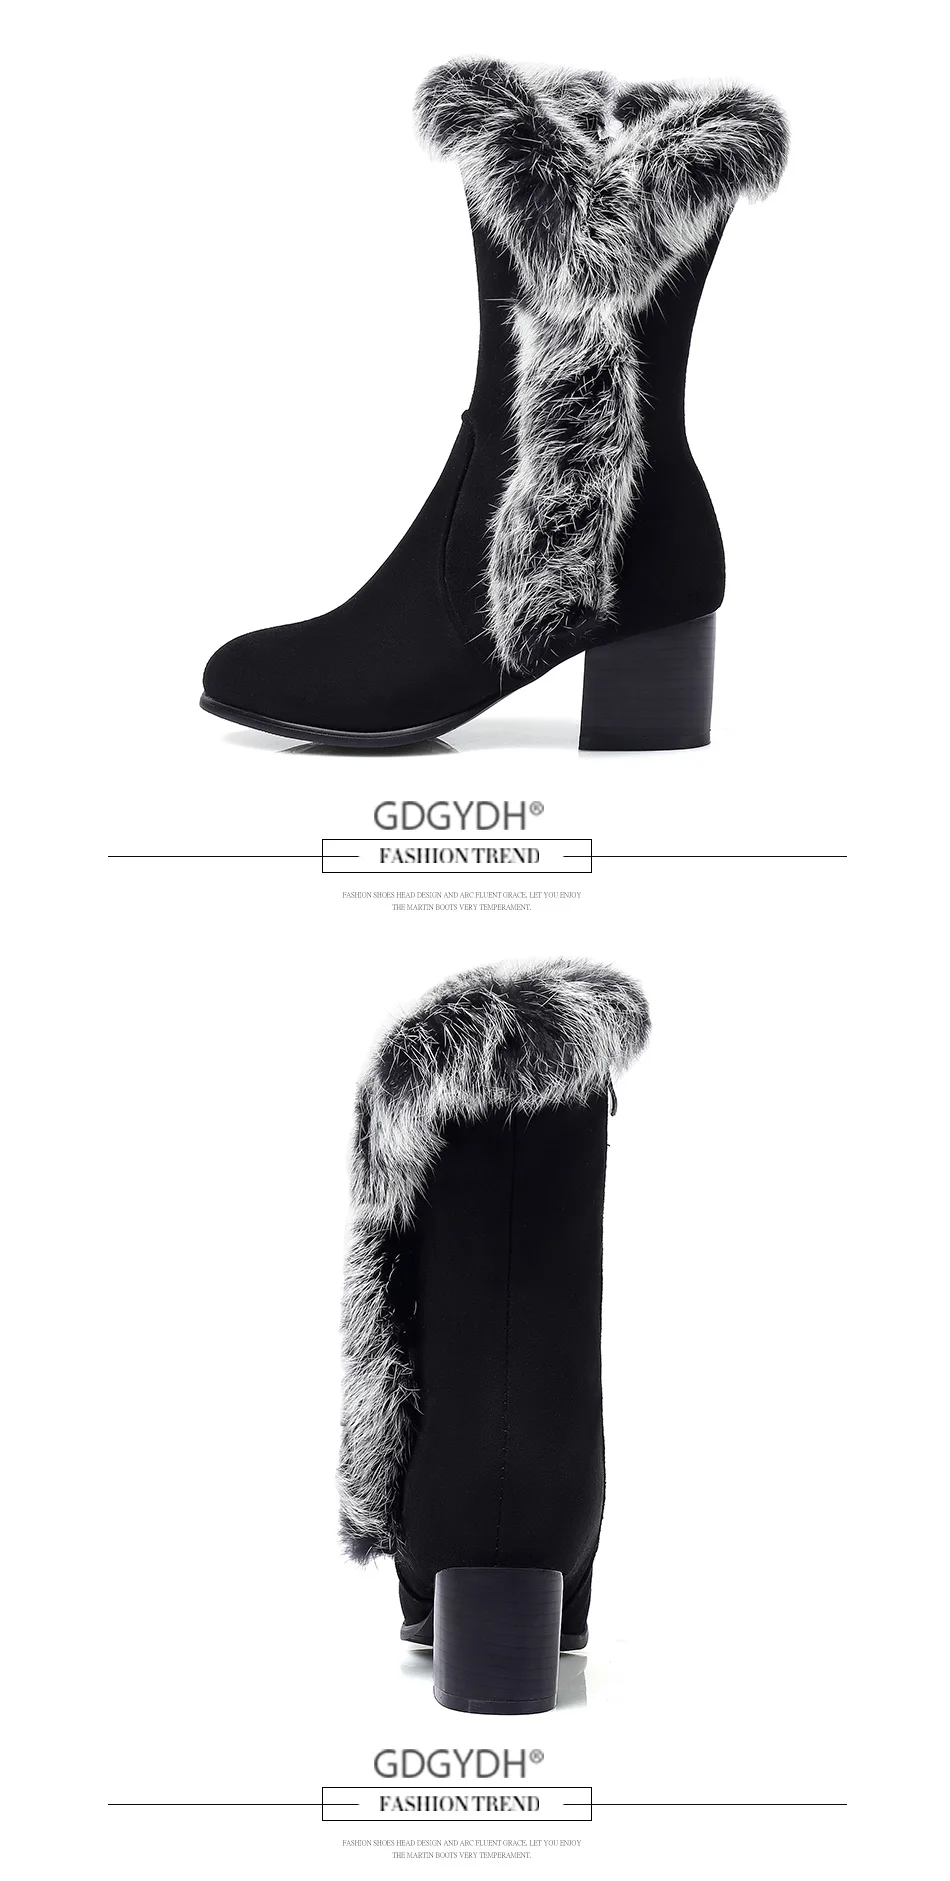 Gdgydh/женские зимние ботинки; женская зимняя теплая обувь на каблуке; женская обувь на молнии с резиновой подошвой; высокое качество; Новинка года